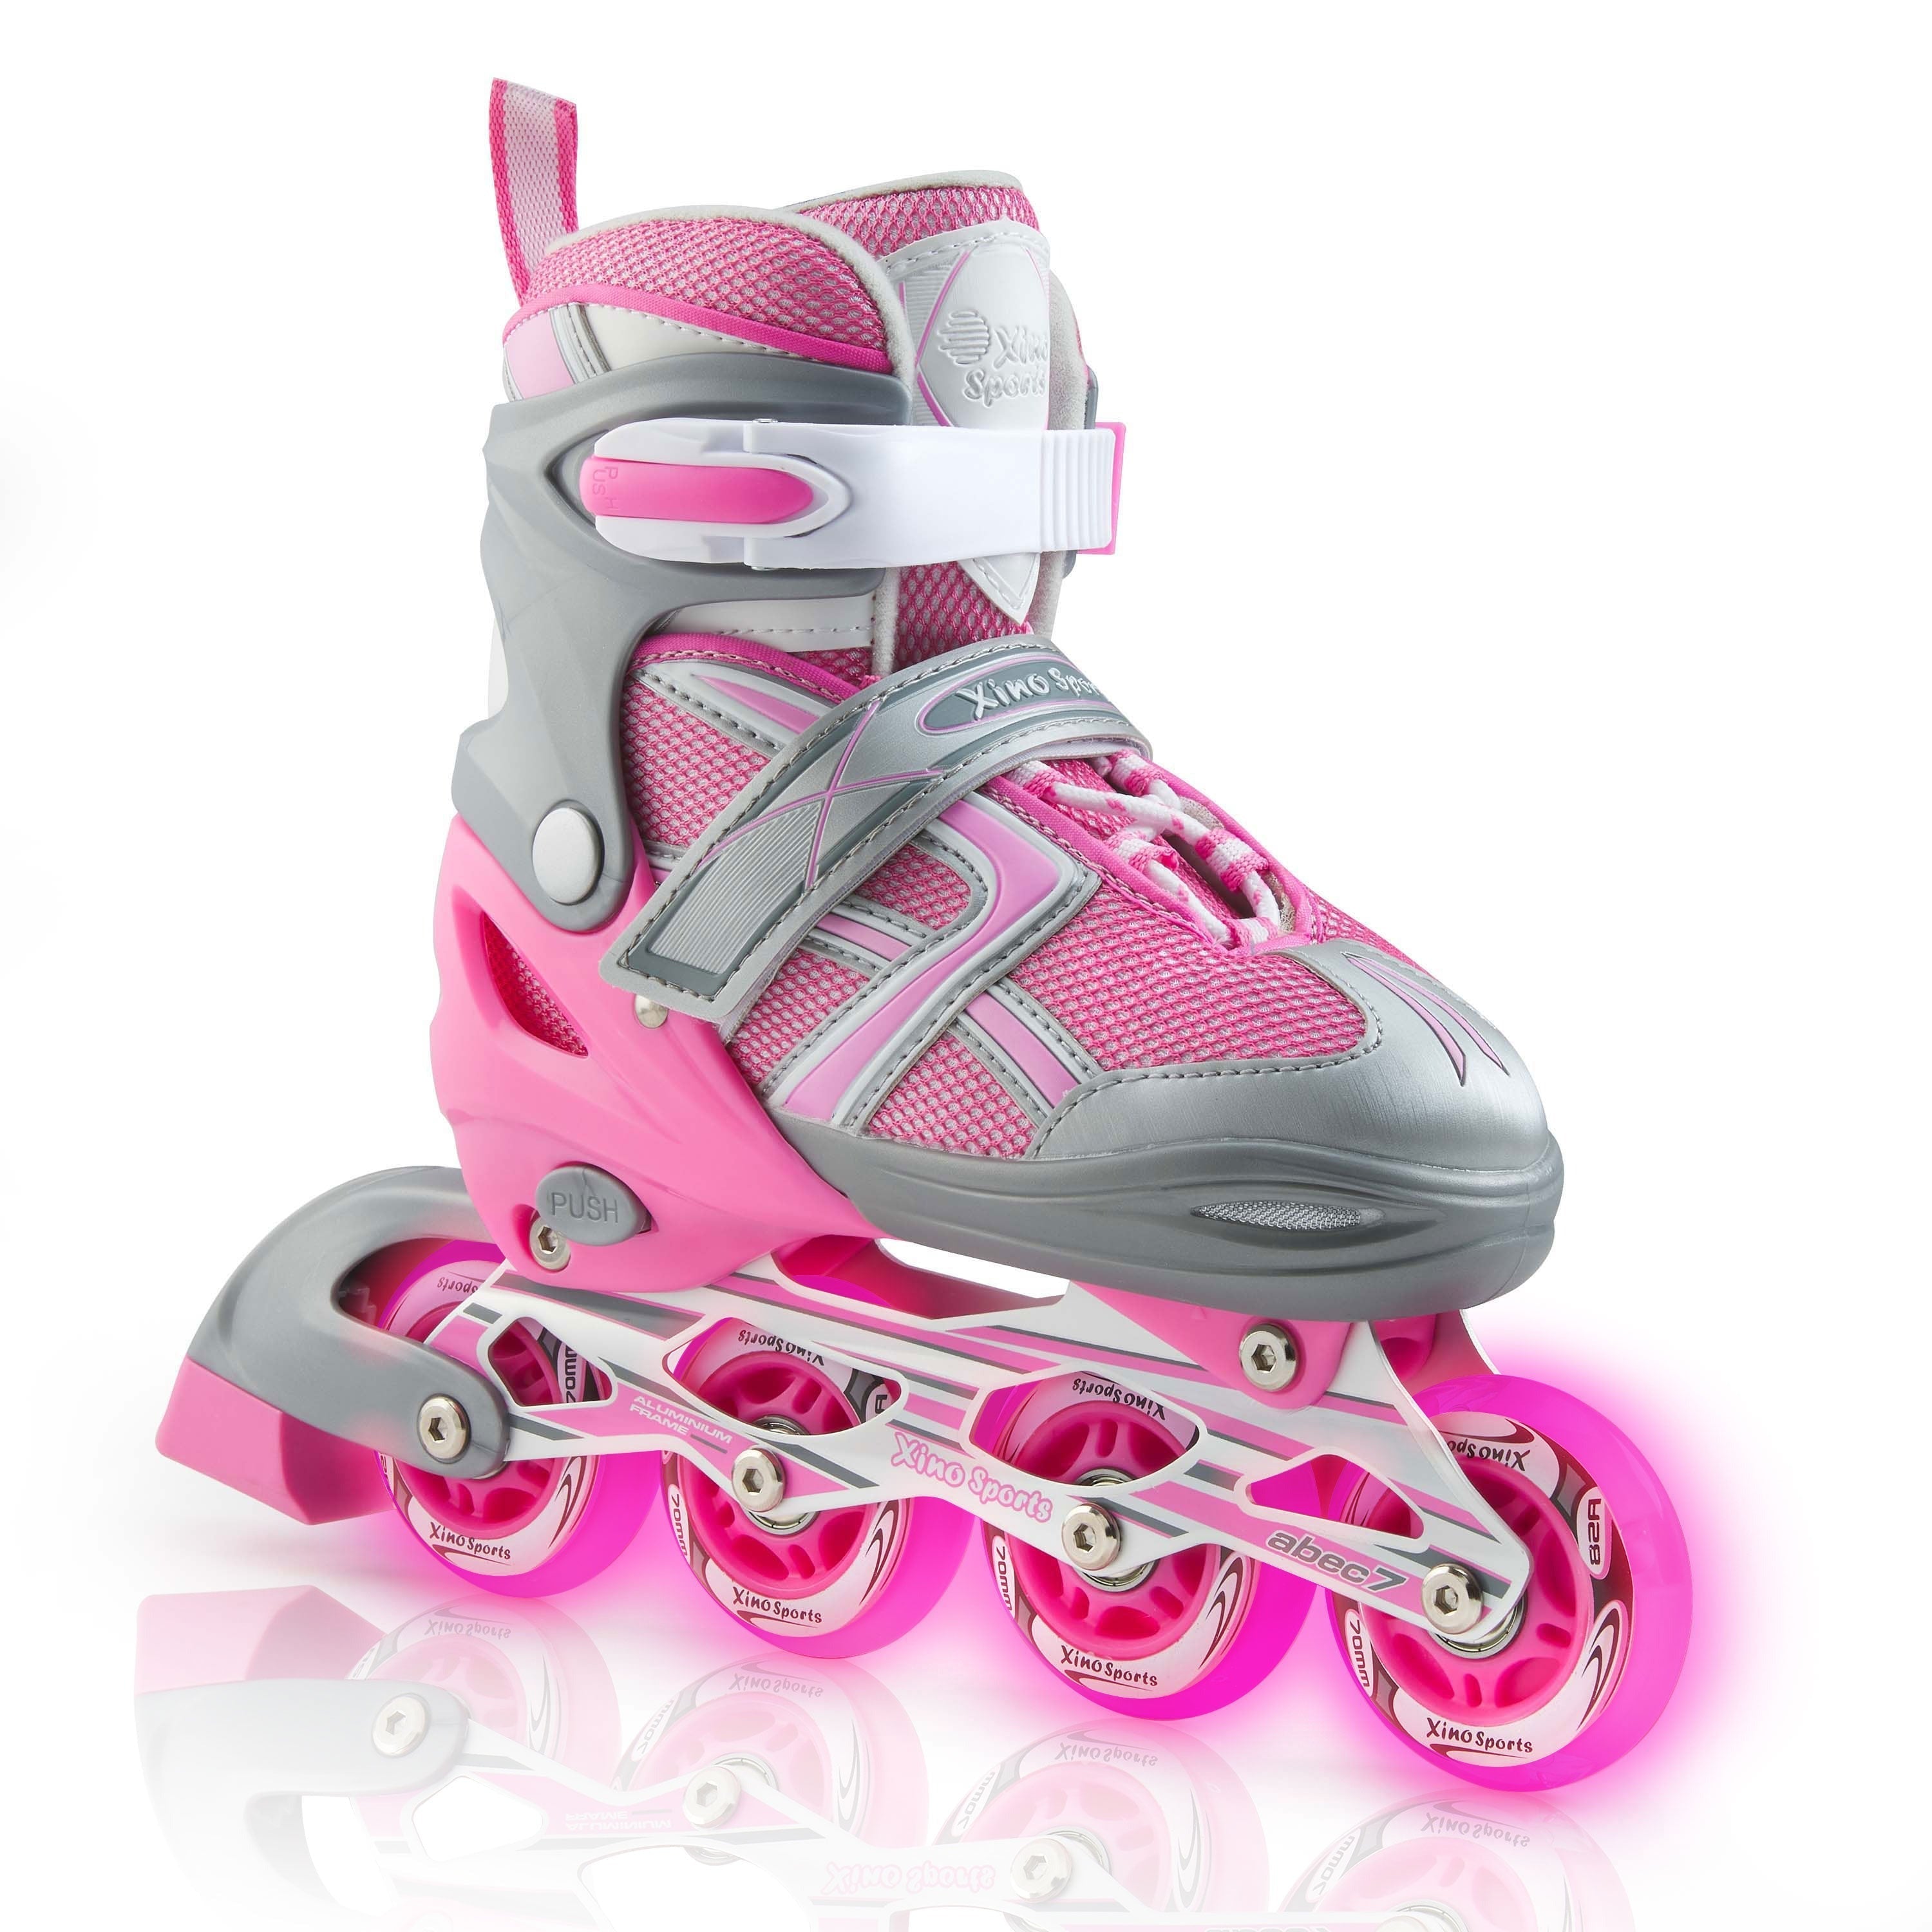 Gyroshoes Inline skate W2 Roller Blades for kids